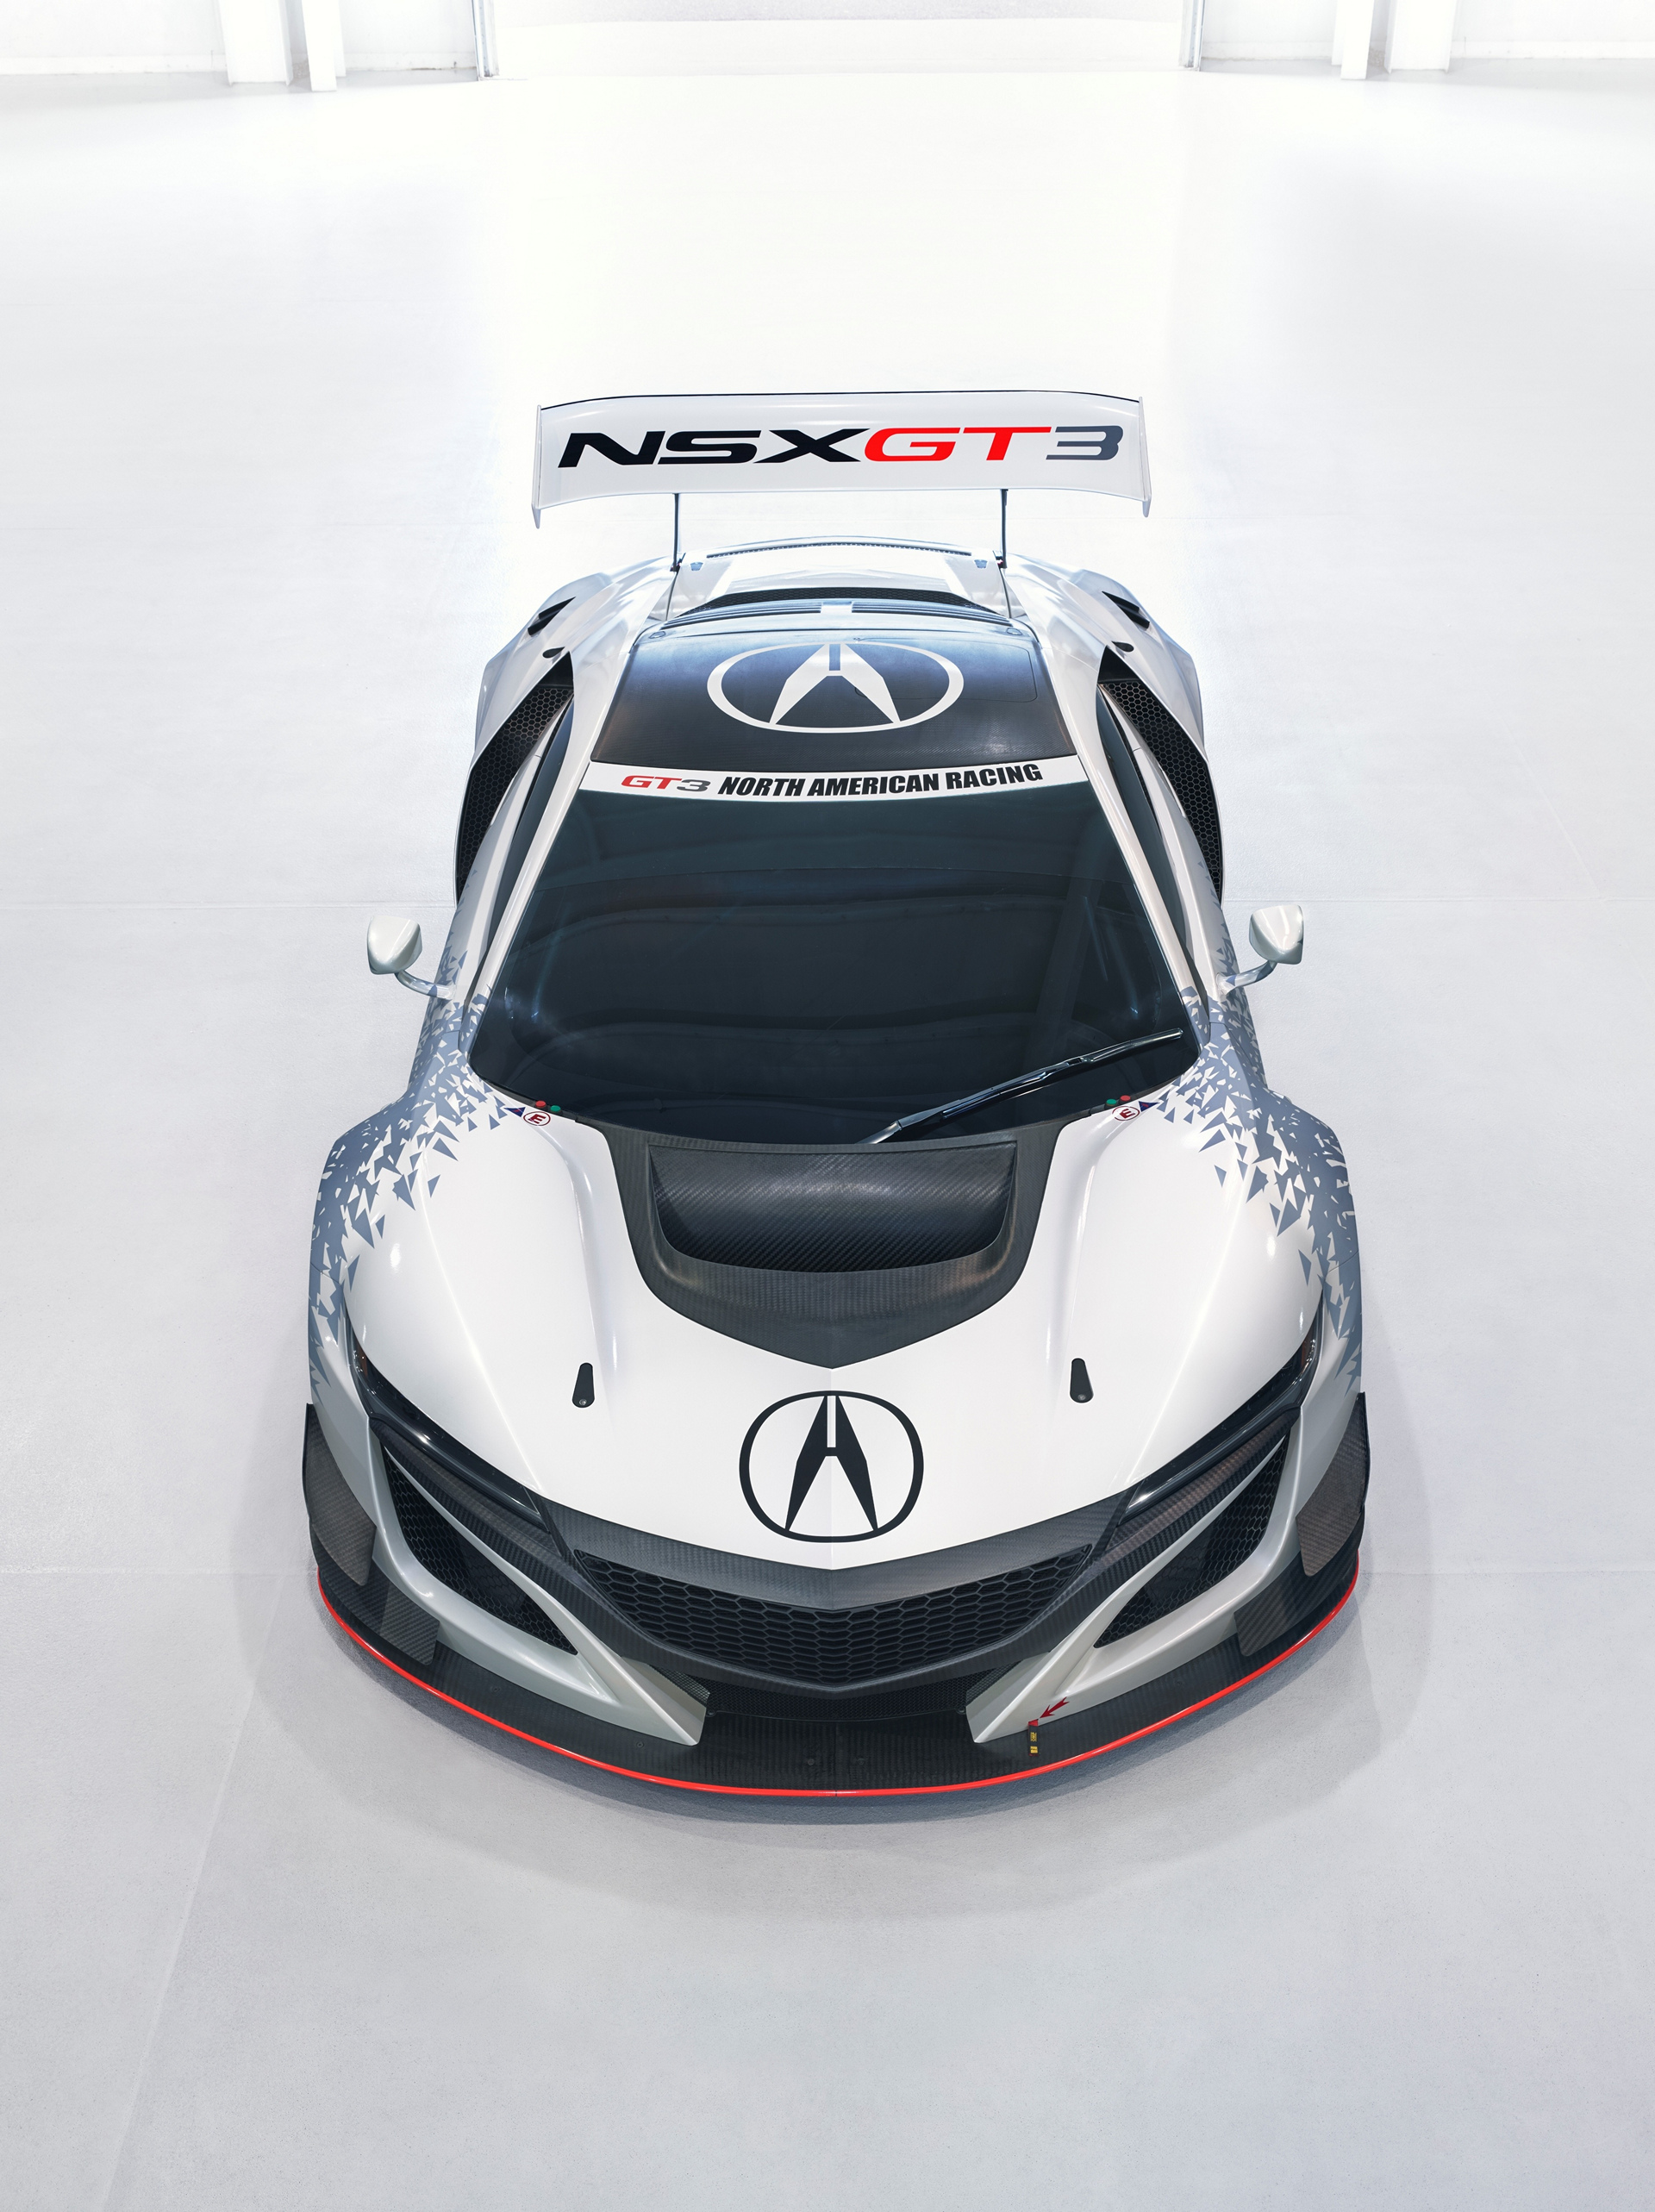 Acura NSX GT3 Race Car © Honda Motor Co., Ltd.